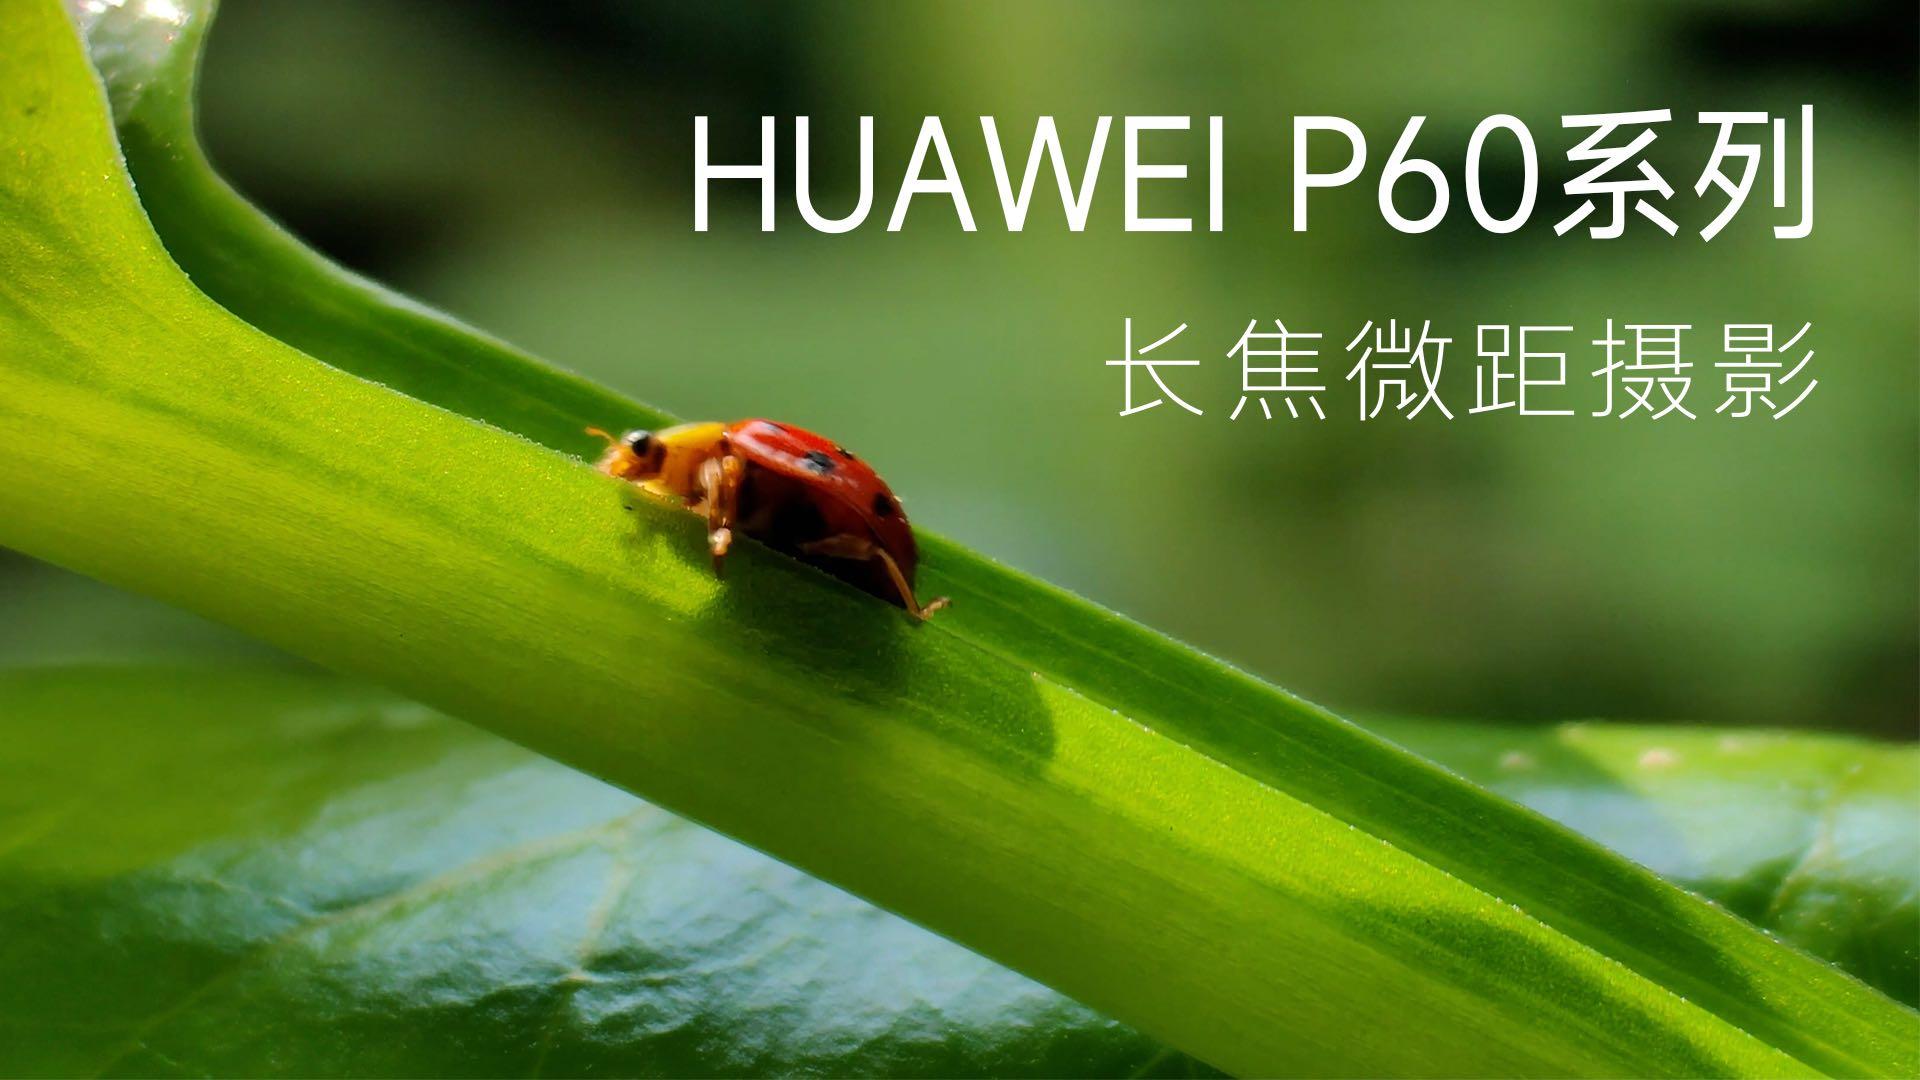 HUAWEI P60 系列长焦微距摄影